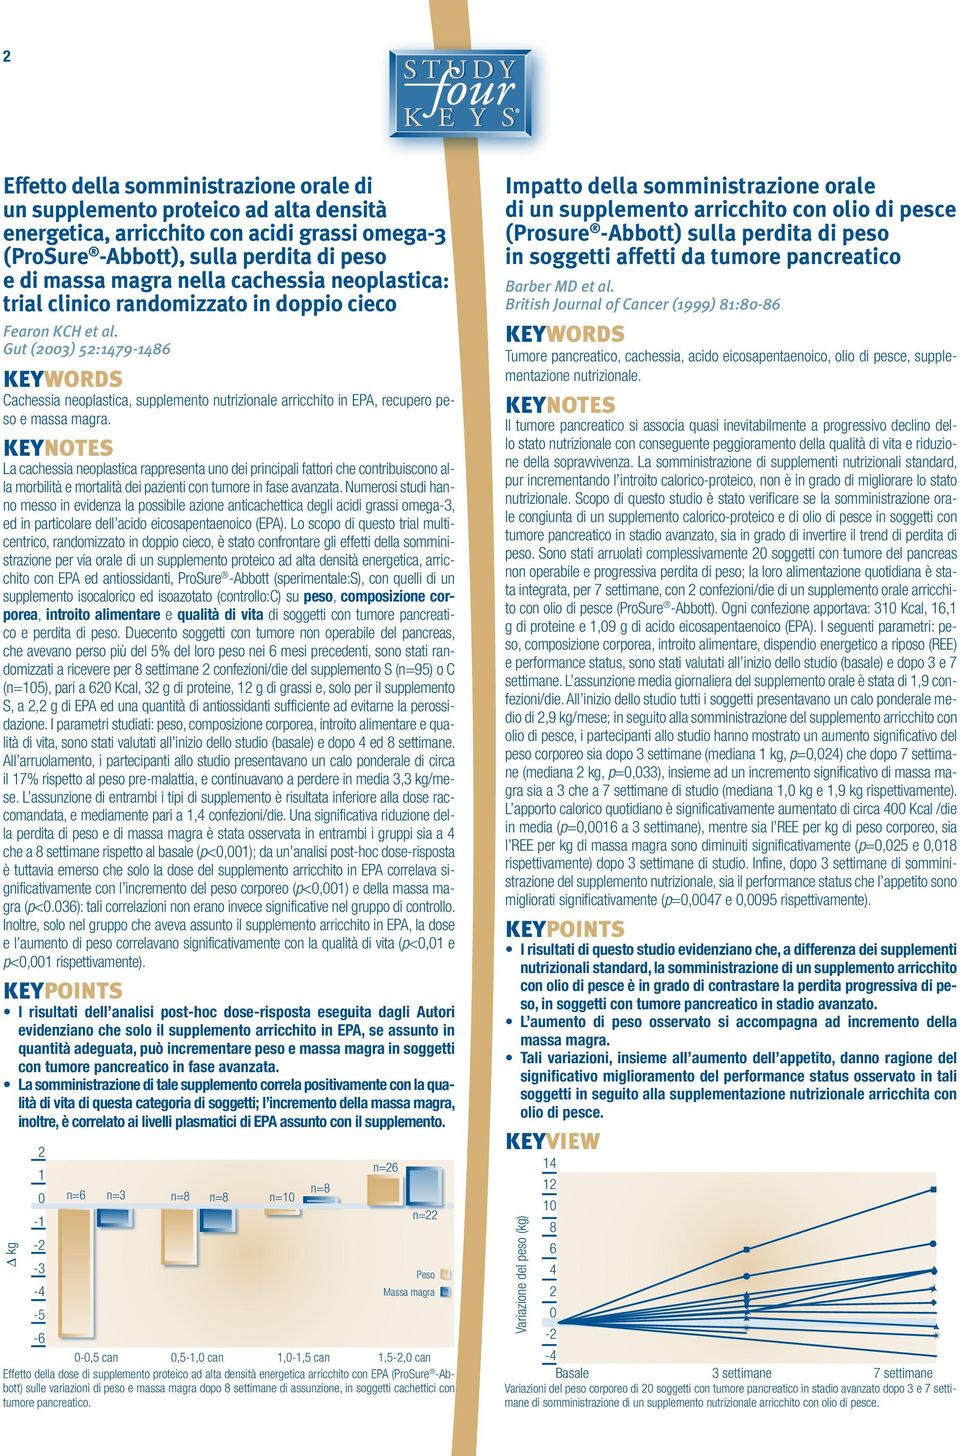 Gut (2003) 52:1479-1486 Cachessia neoplastica, supplemento nutrizionale arricchito in EPA, recupero peso e massa magra.